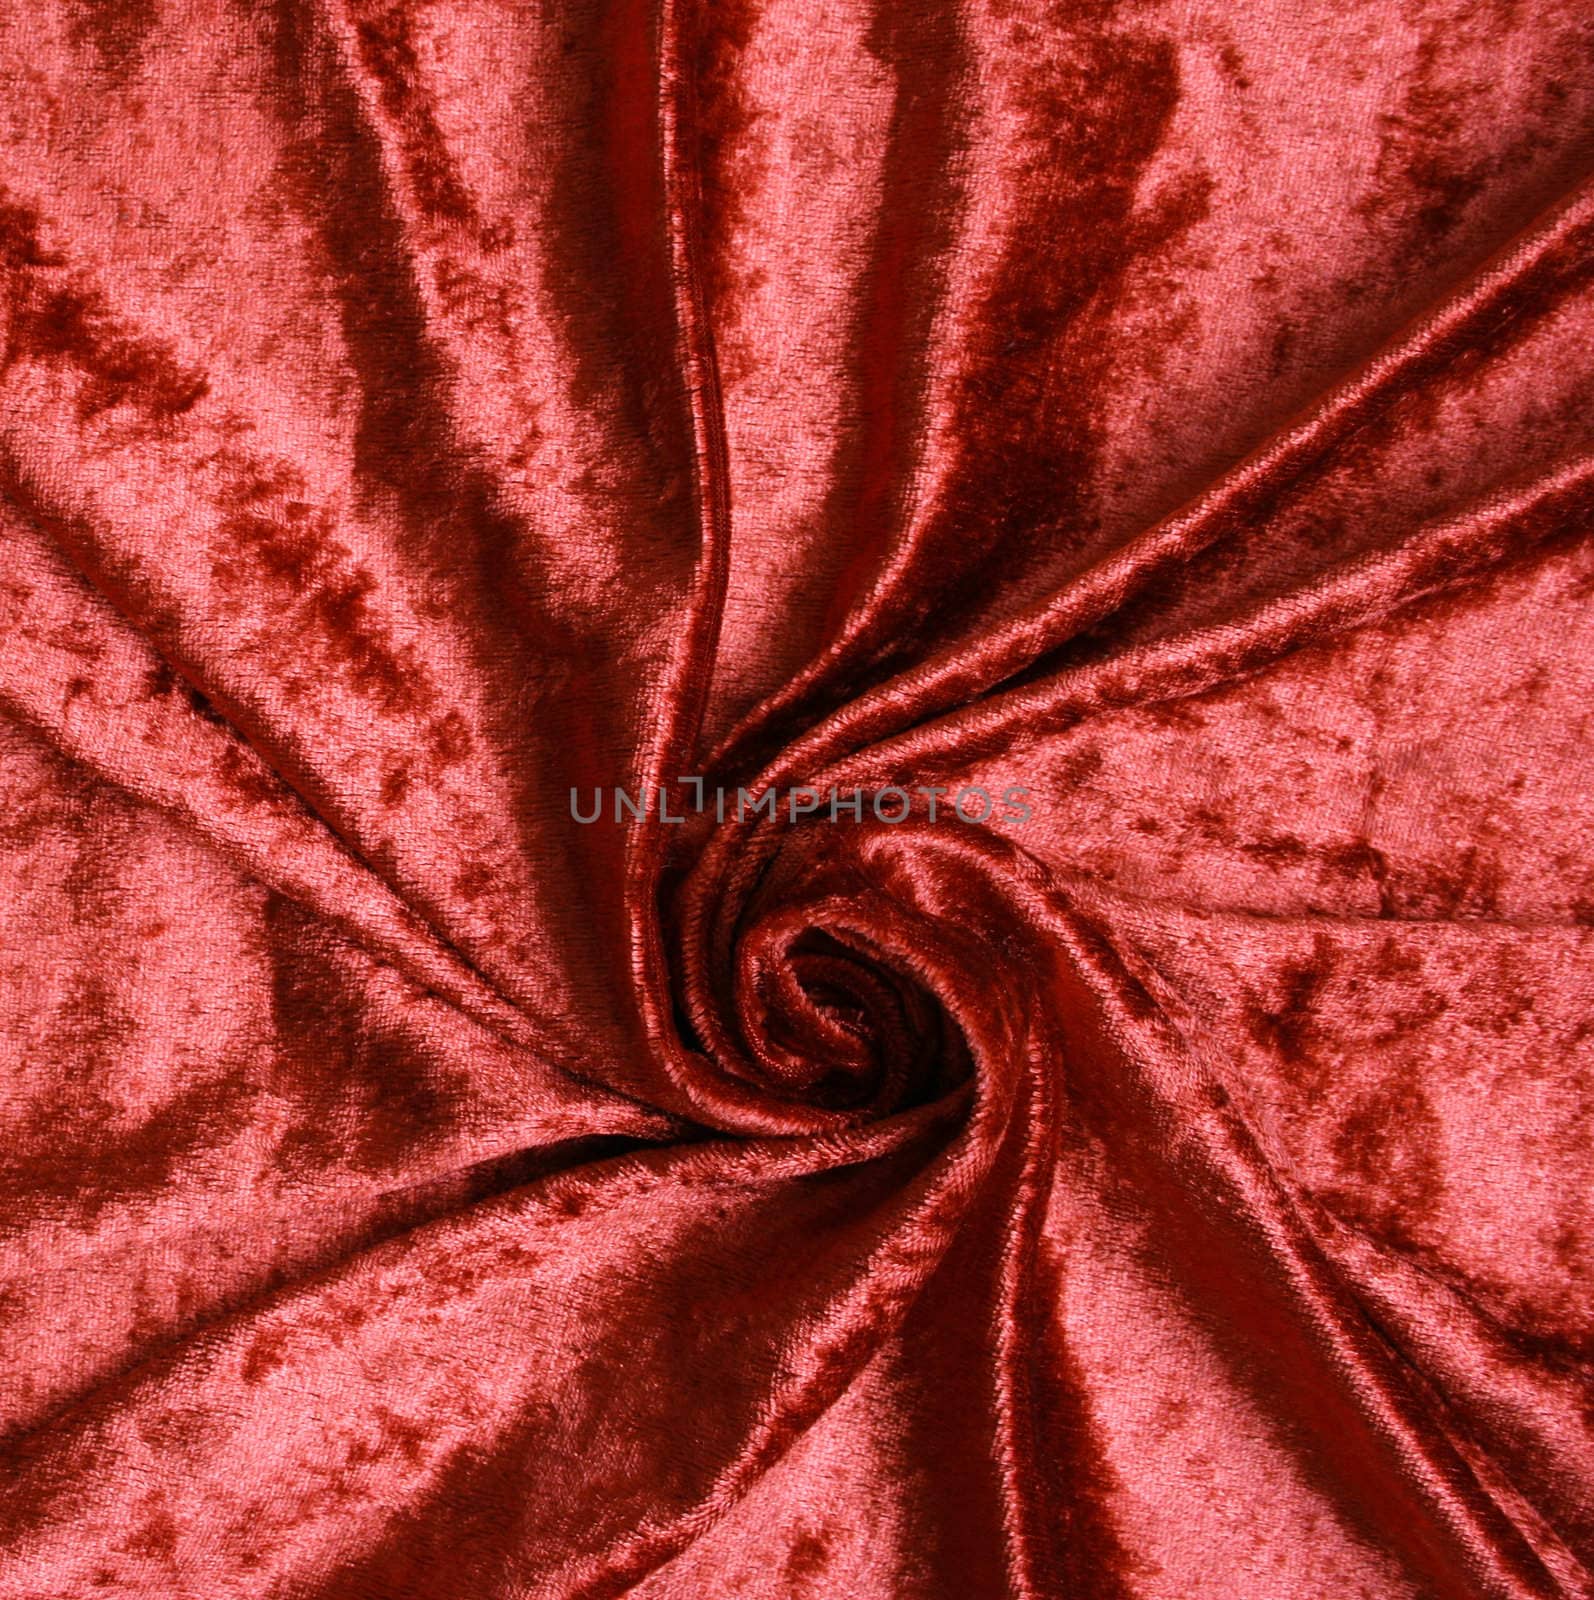 Terracotta velvet fabric background by oxanatravel